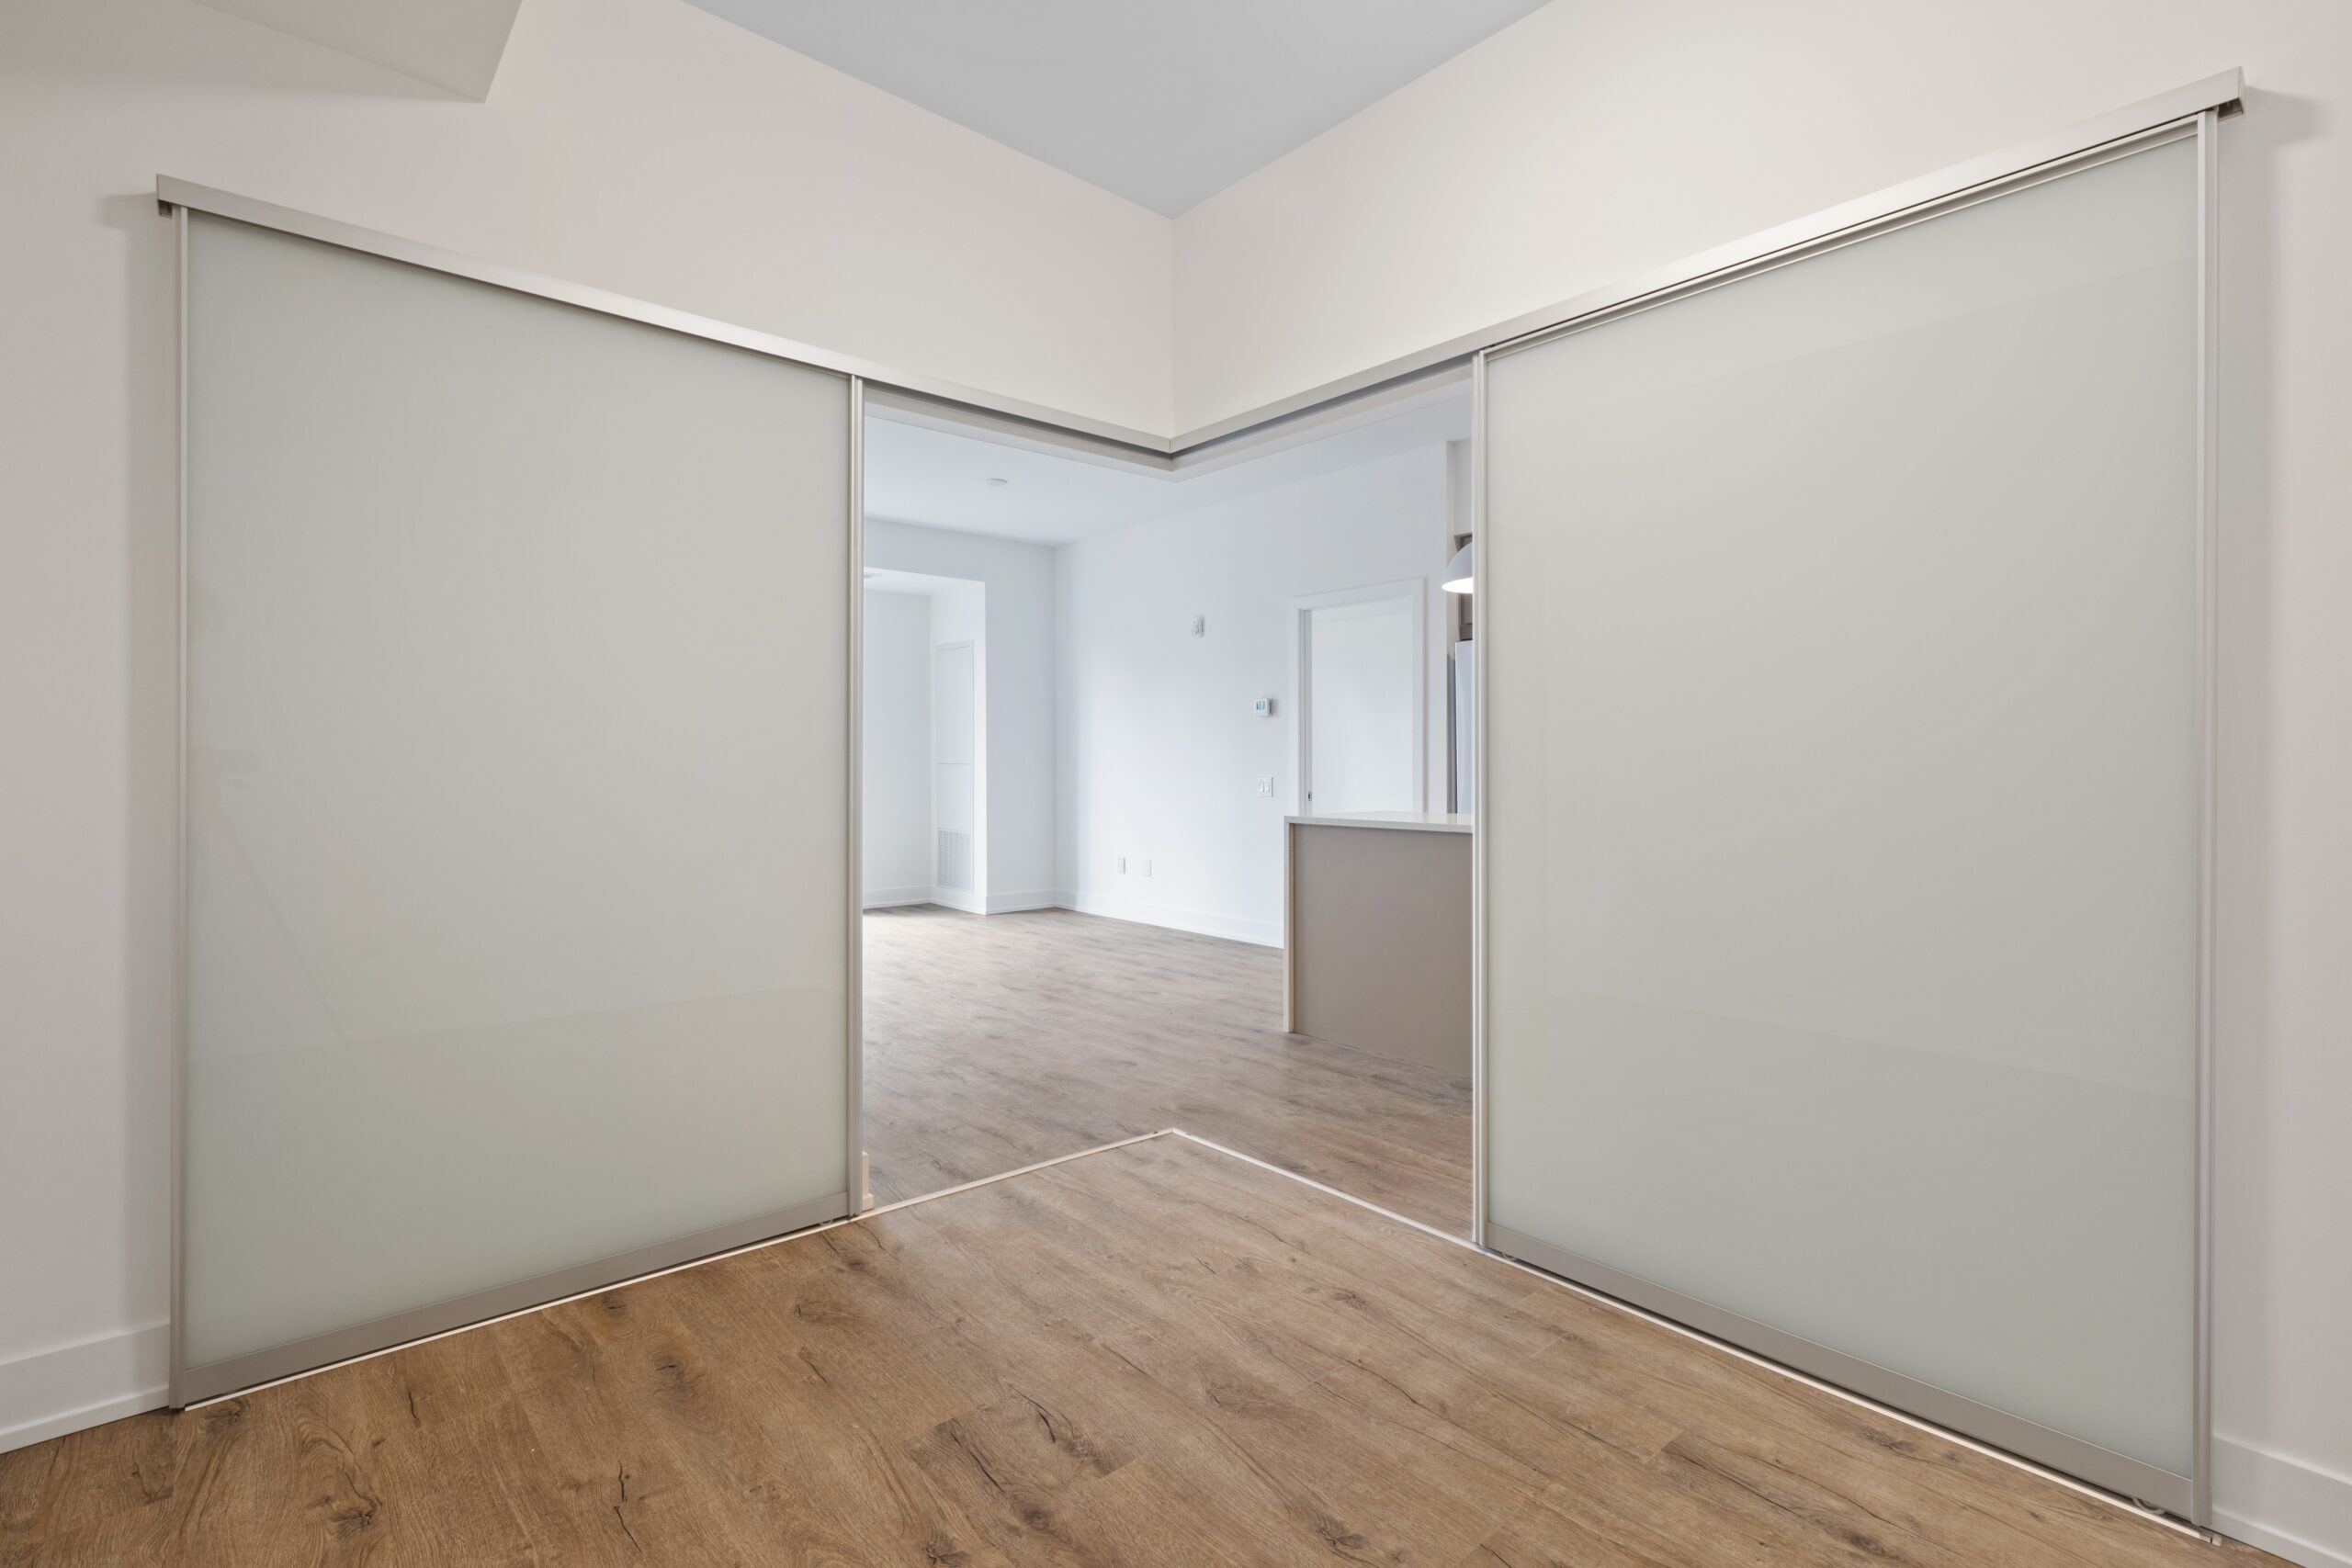 Bilden visar: En stilfull skjutdörr vägg som skiljer mellan vardagsrummet och arbetsrummet i en öppen planlösning.